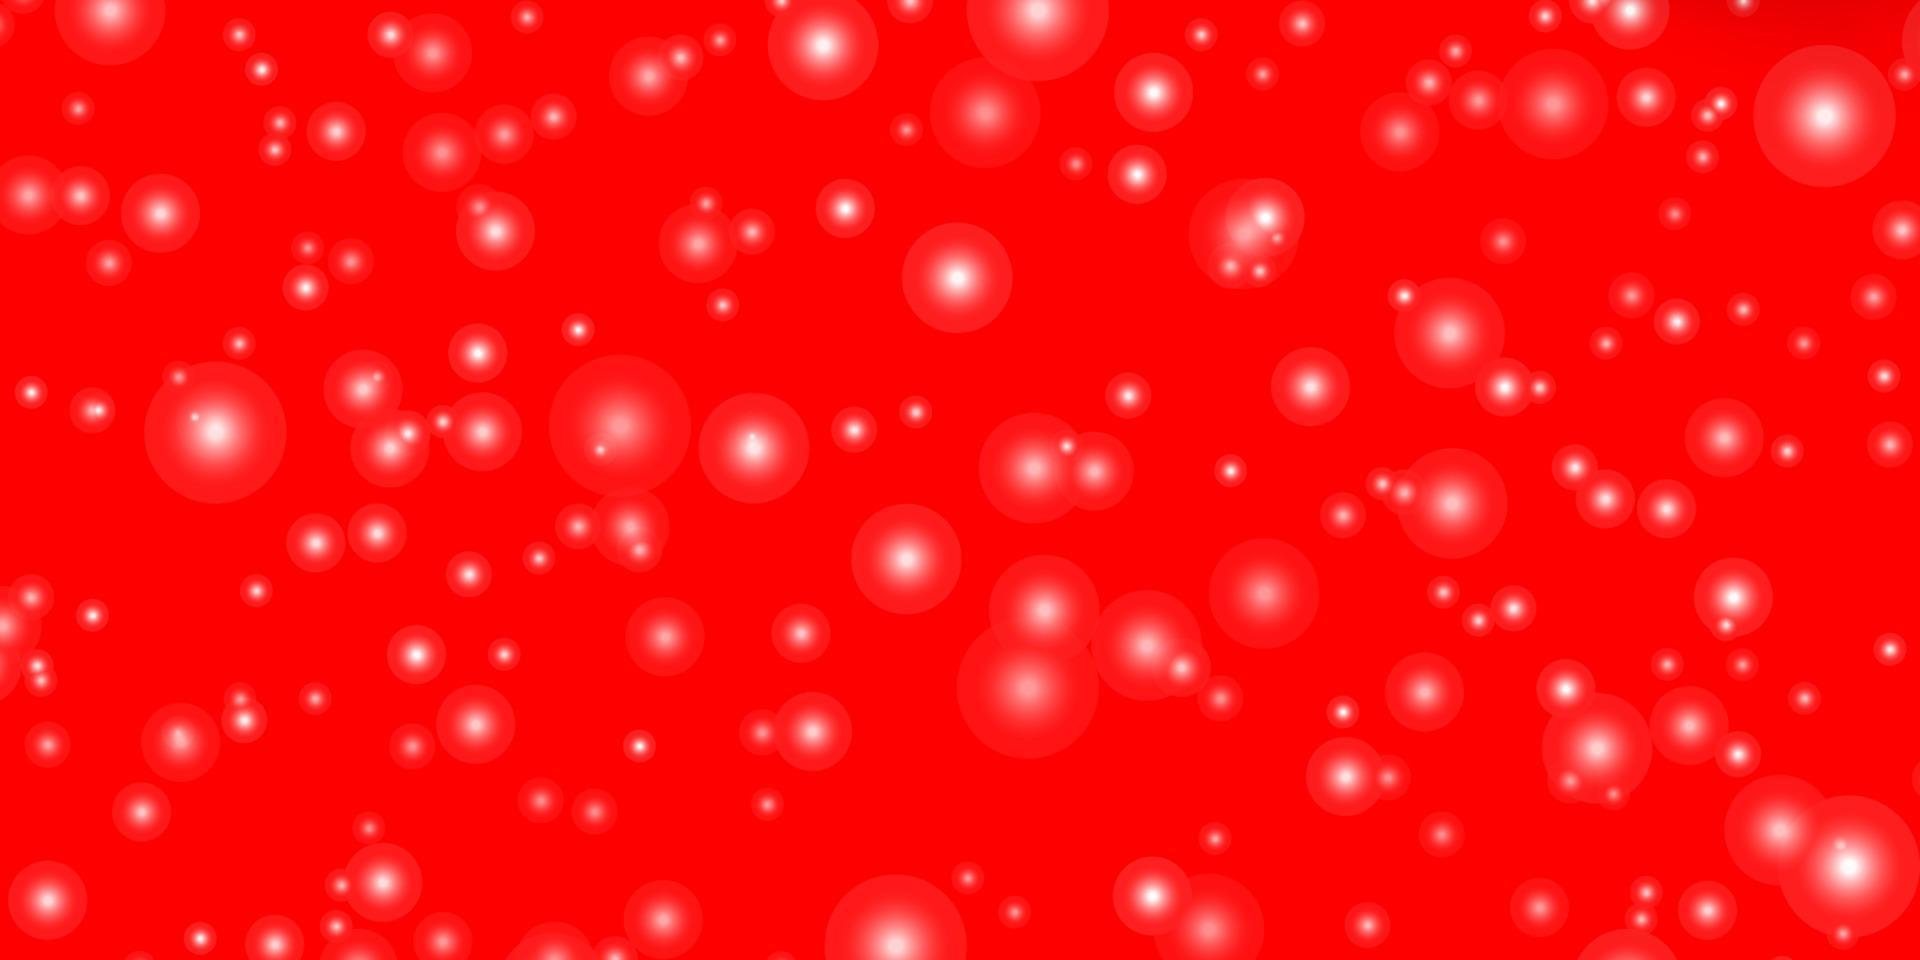 Fondo de vector rojo claro con estrellas de colores.